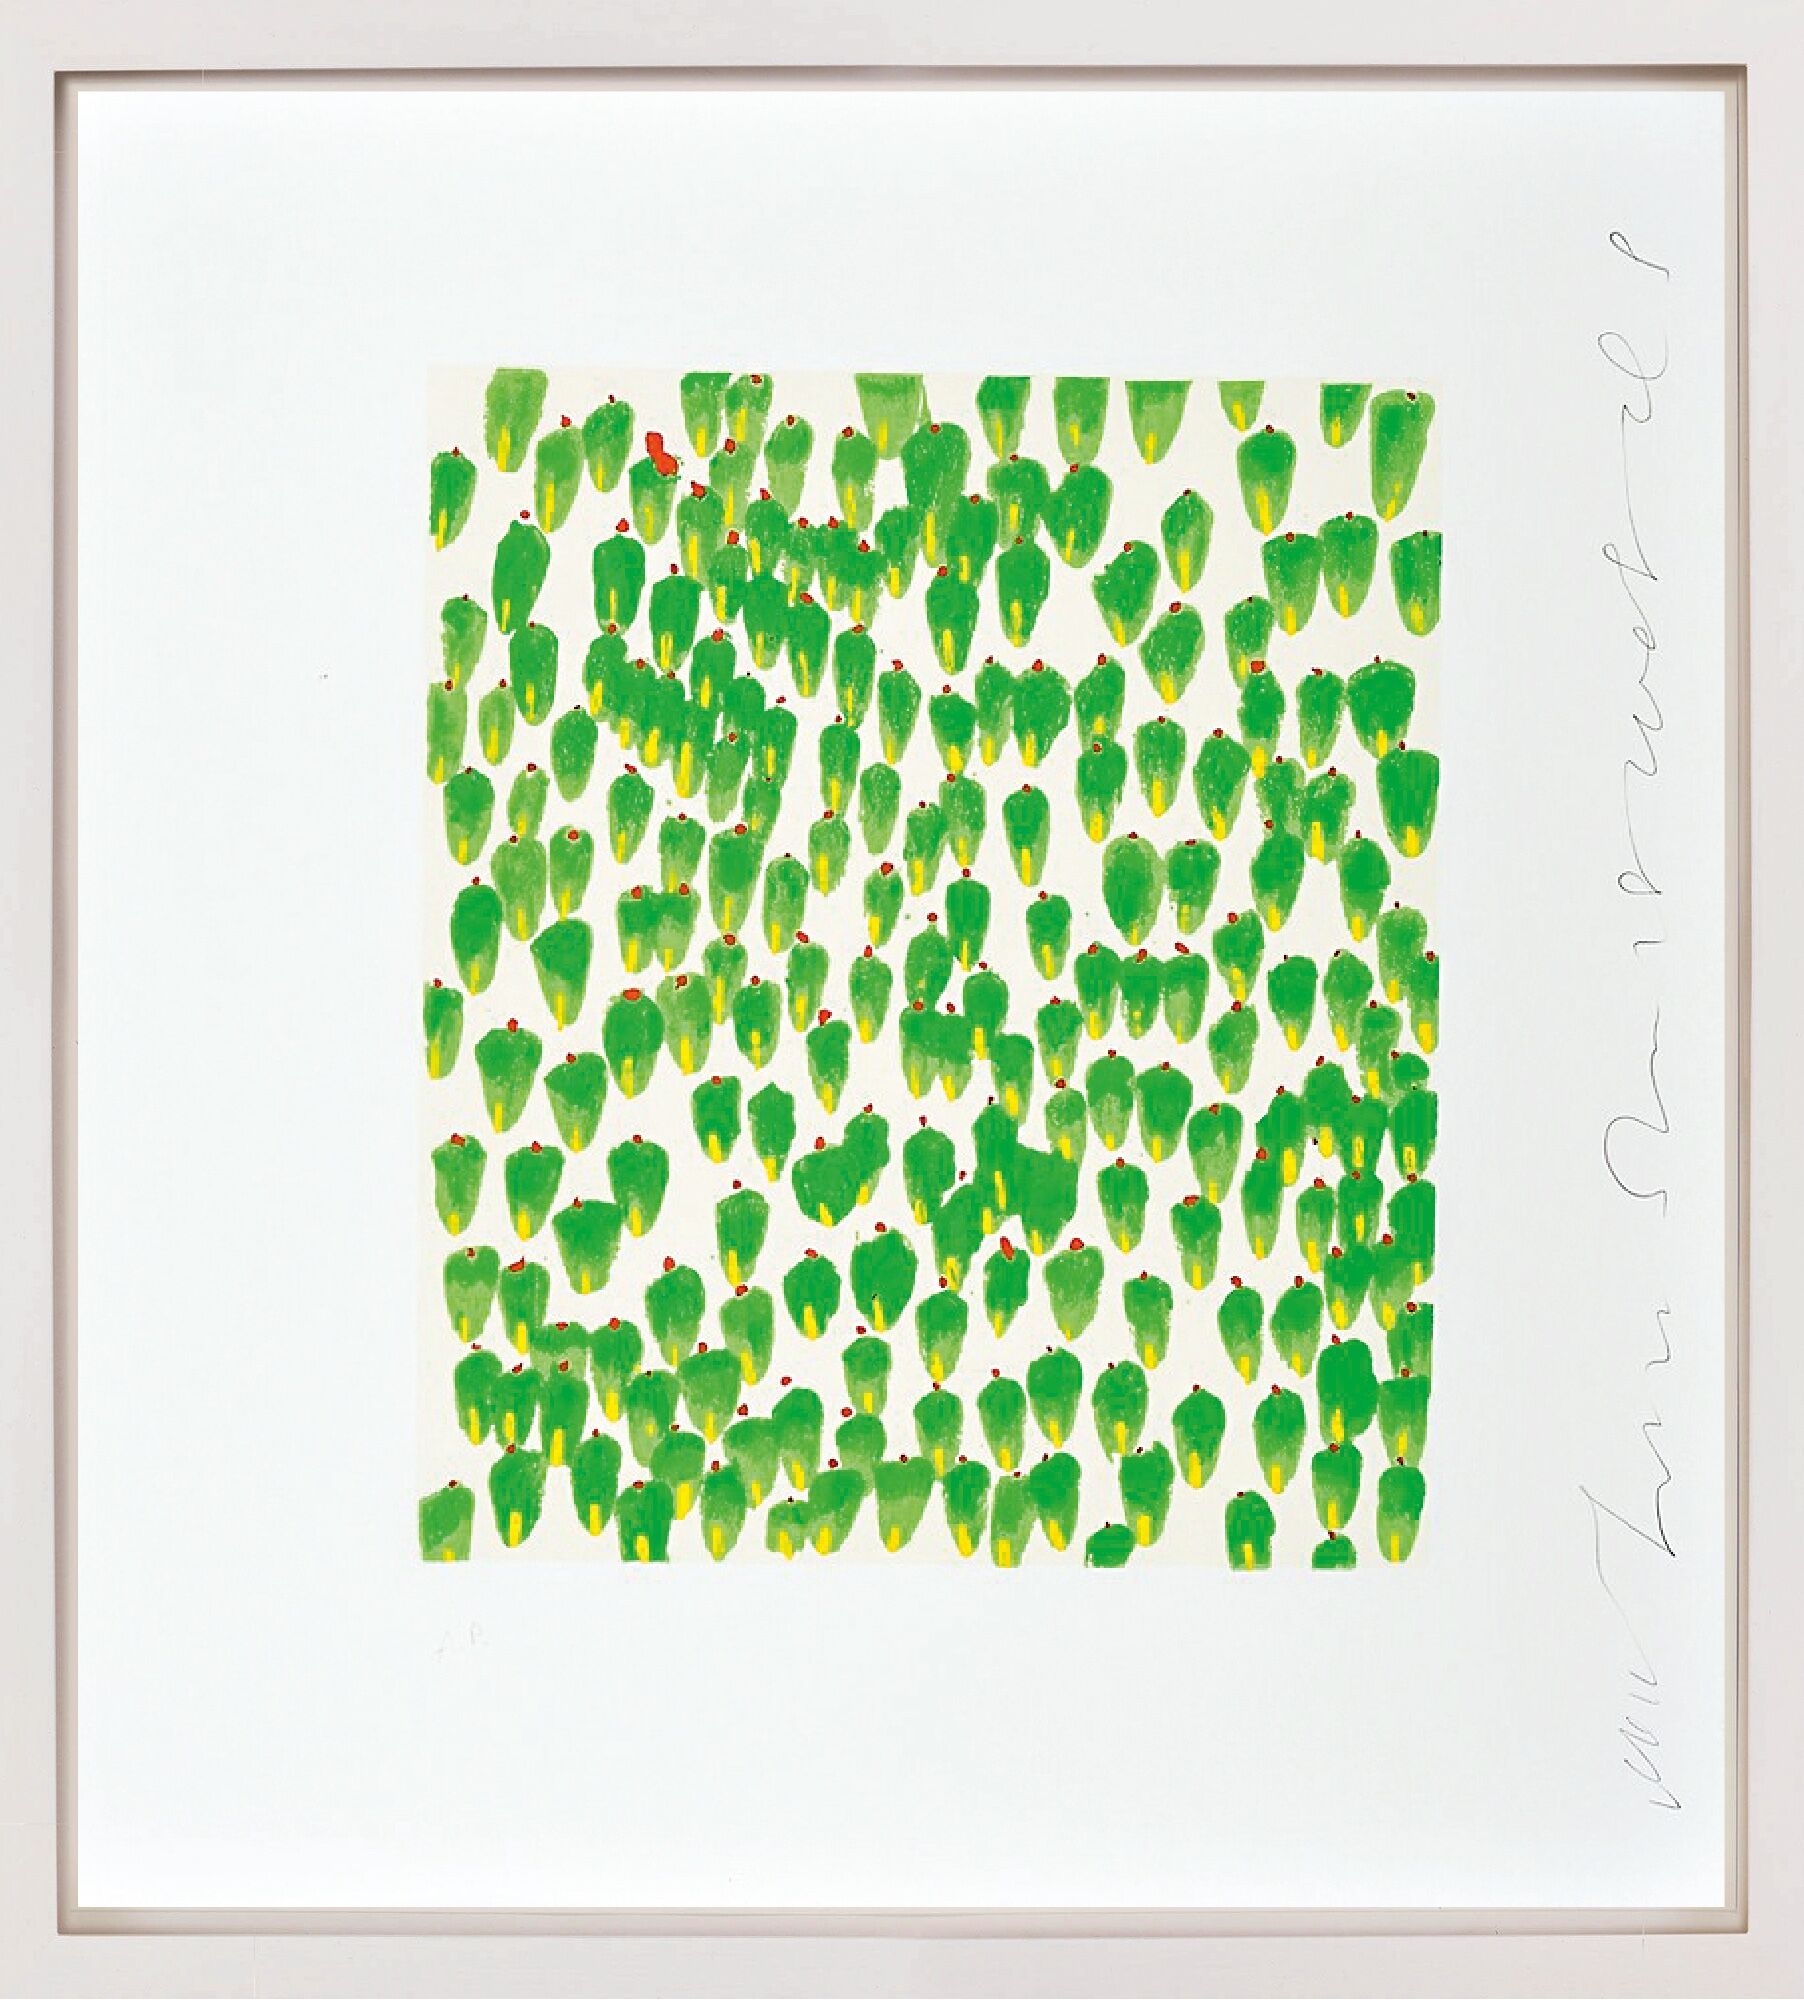 Beeld "Muurbloemen 30" (2008) von Donald Sultan